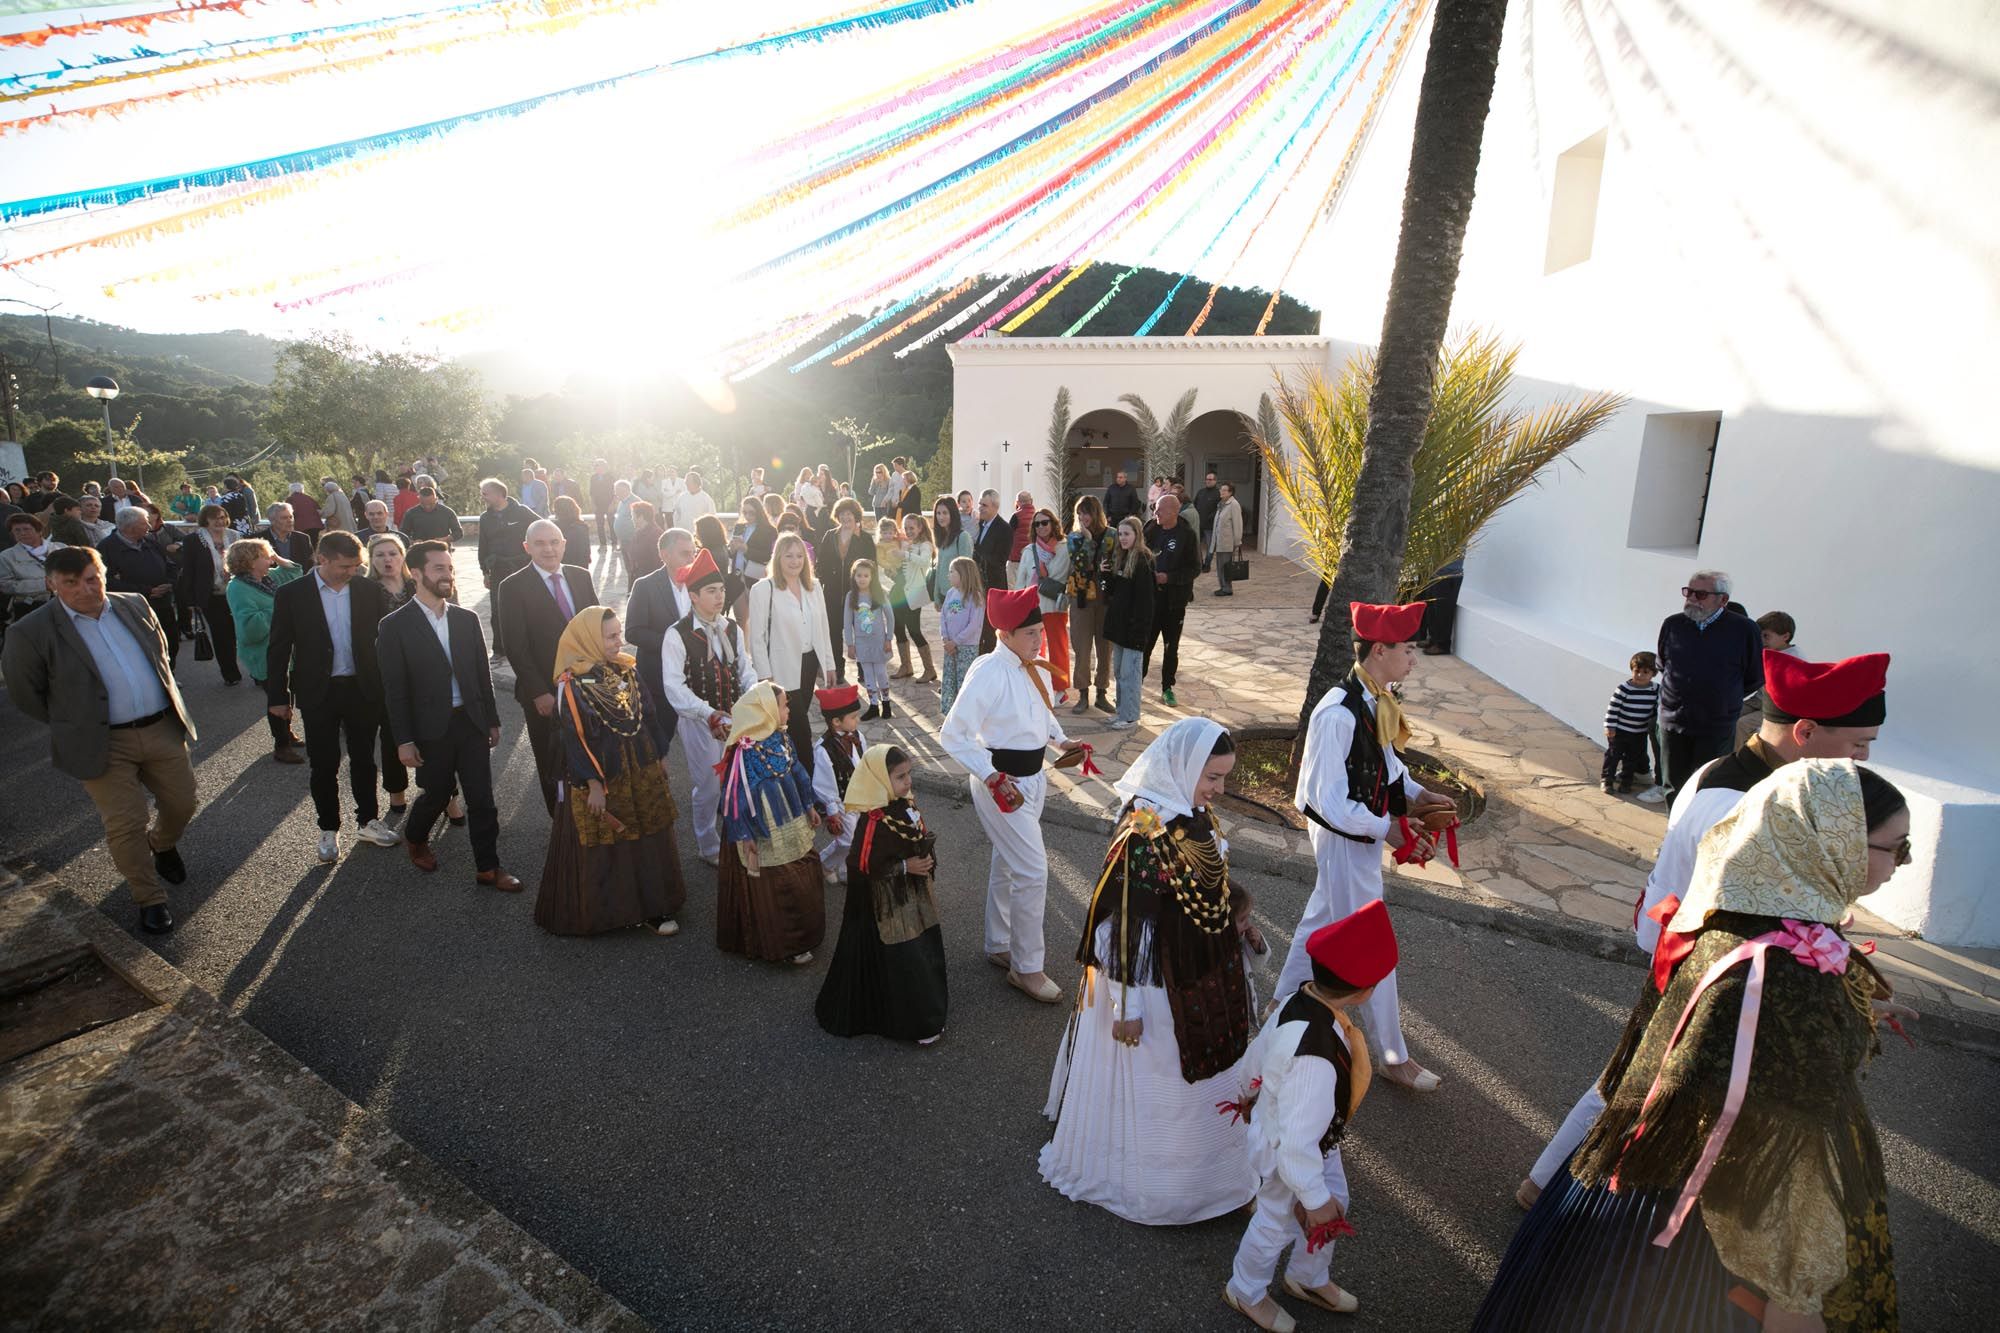 Fiestas de sa Cala de Sant Vicent